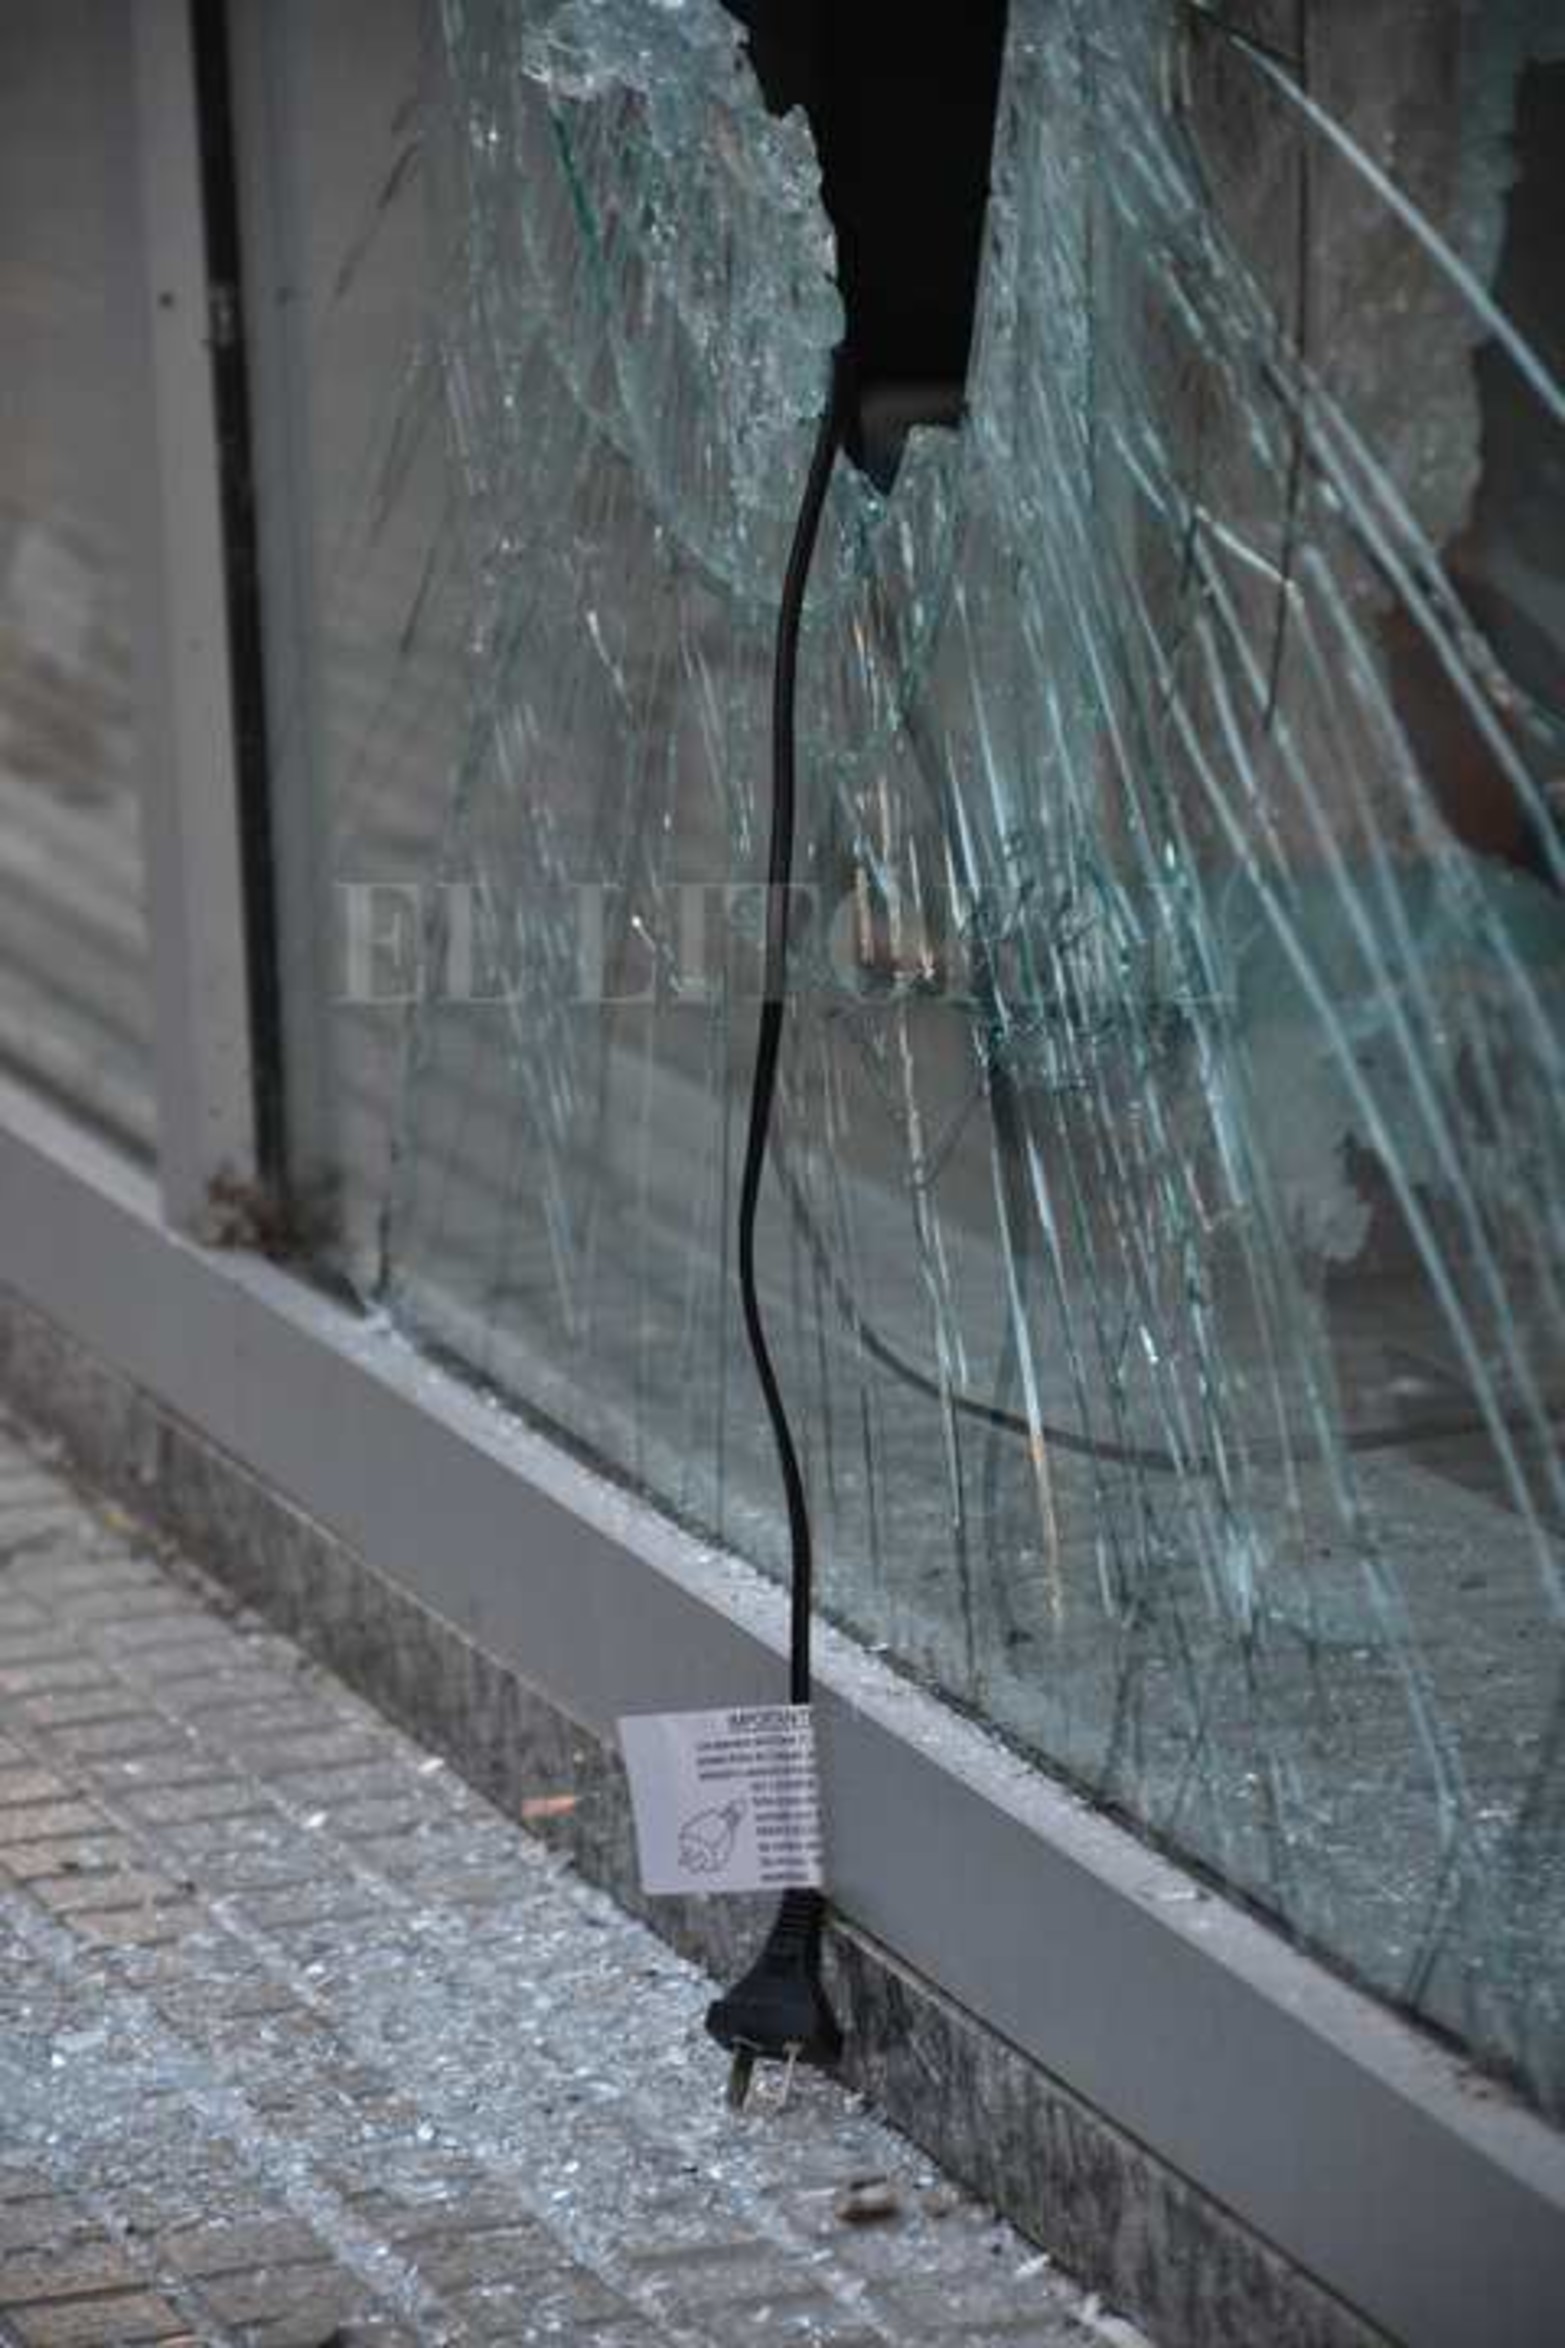 En el corazón de la peatonal, una zona vigilada por cámaras de seguridad, lograron romper el sistema de vidrio de la alta vidriera del local de electrodomésticos.